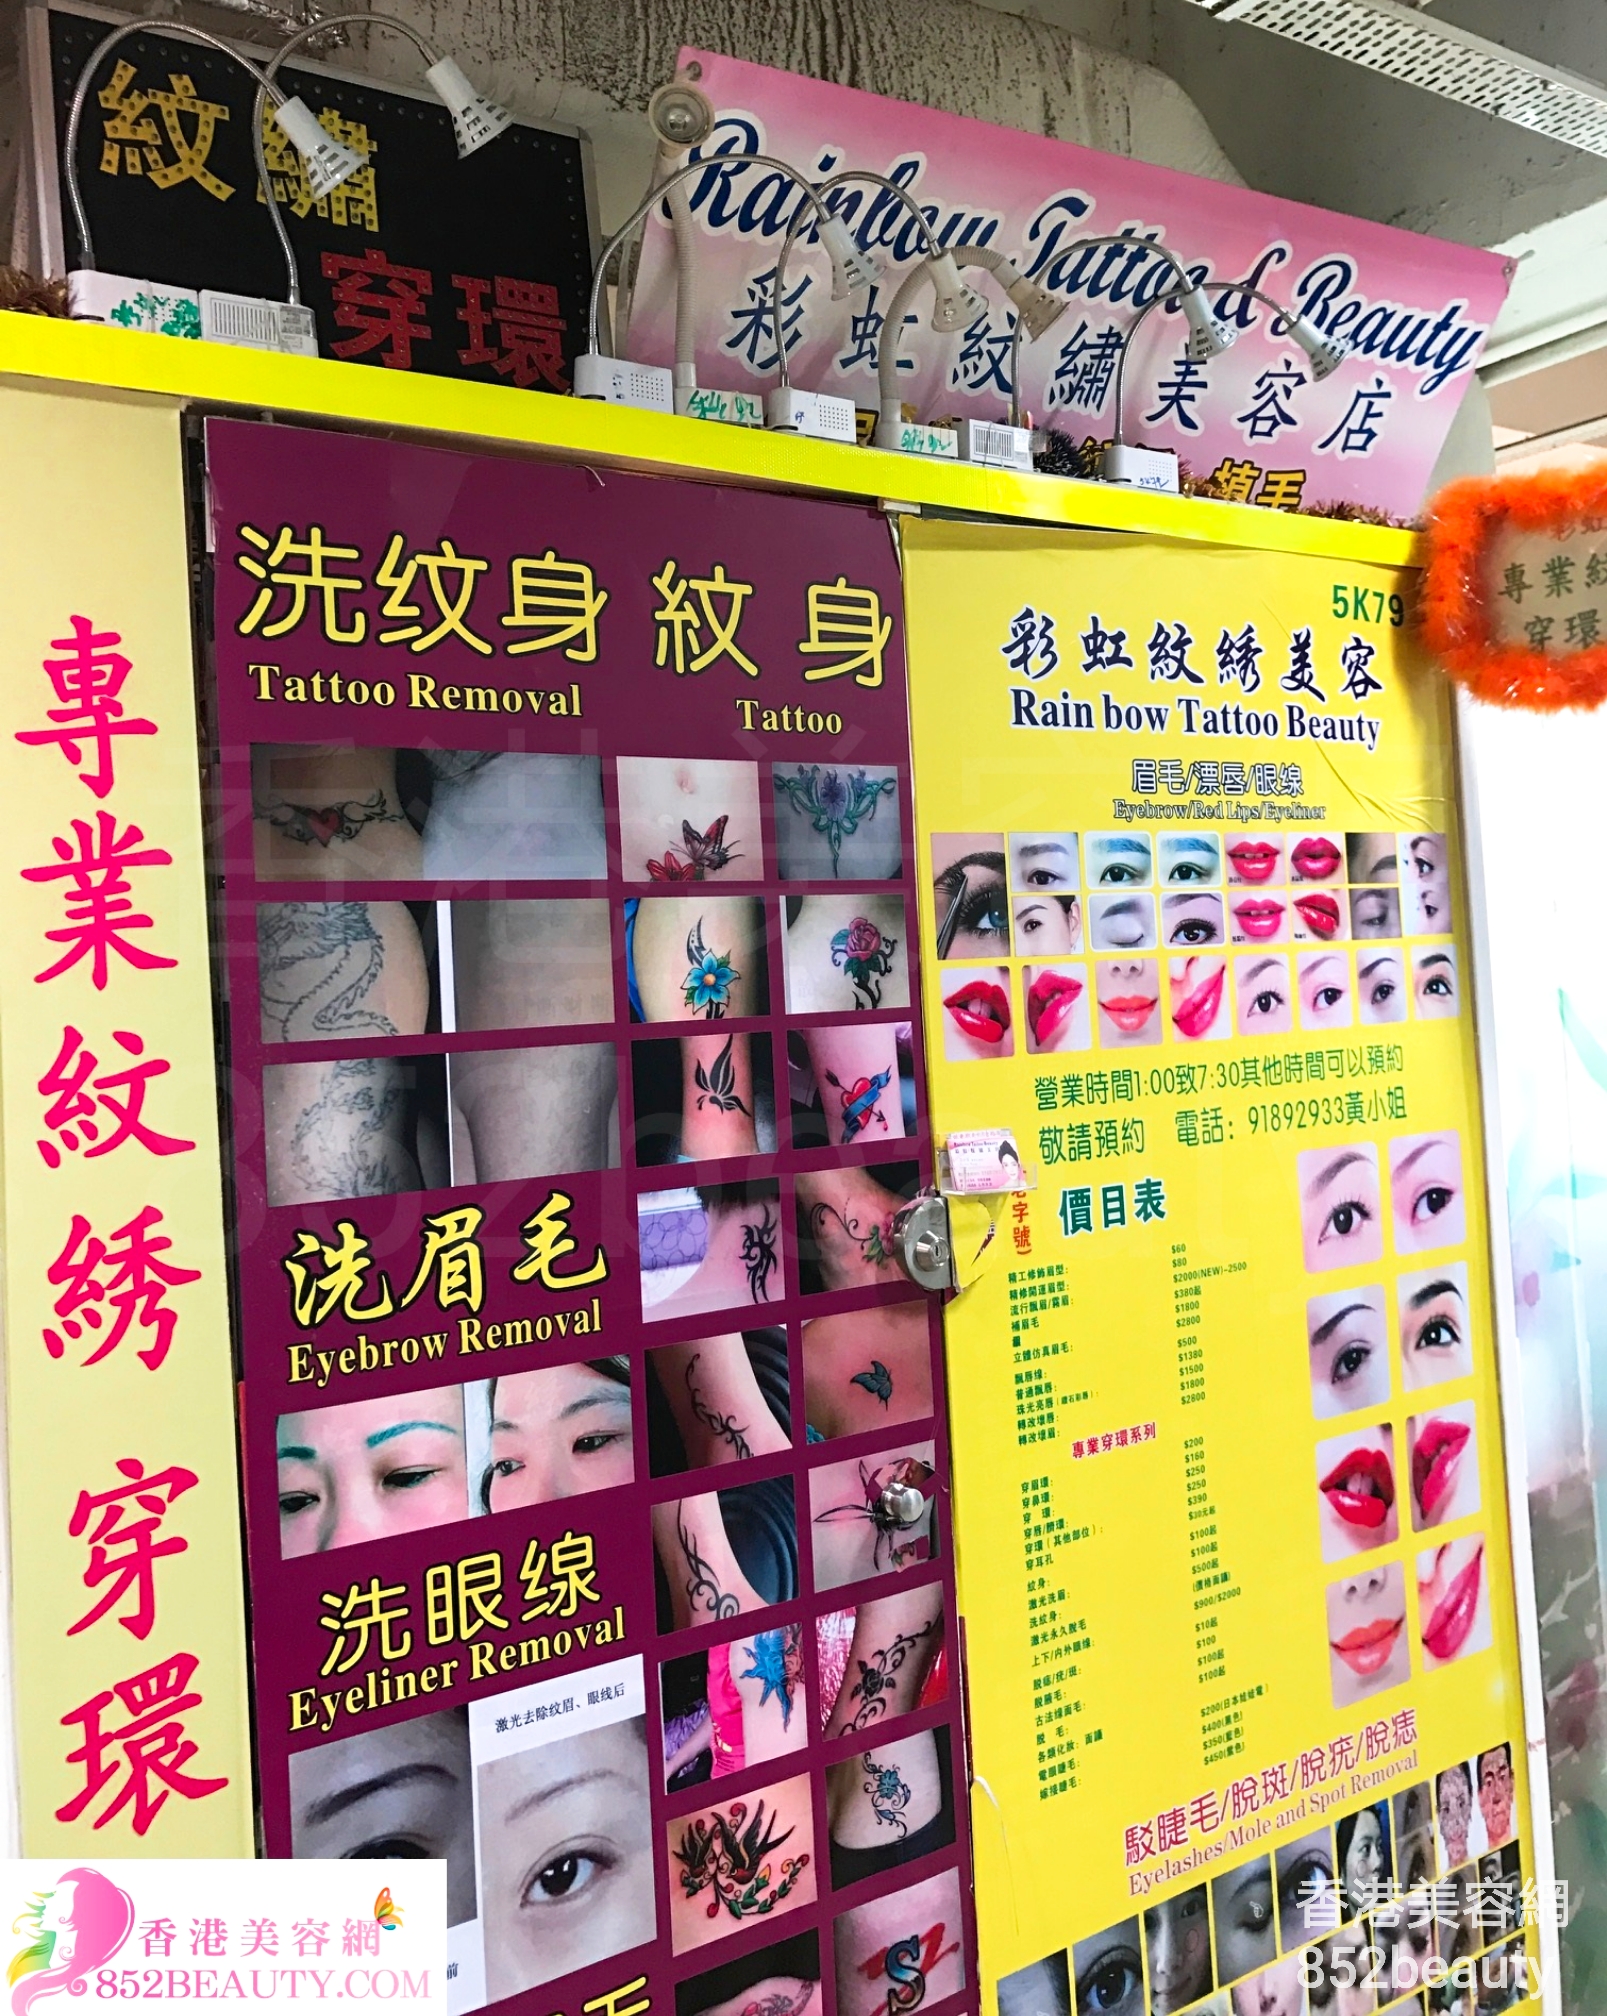 香港美容網 Hong Kong Beauty Salon 美容院 / 美容師: Rainbow Tattoo & Beauty 彩虹紋繡美容店